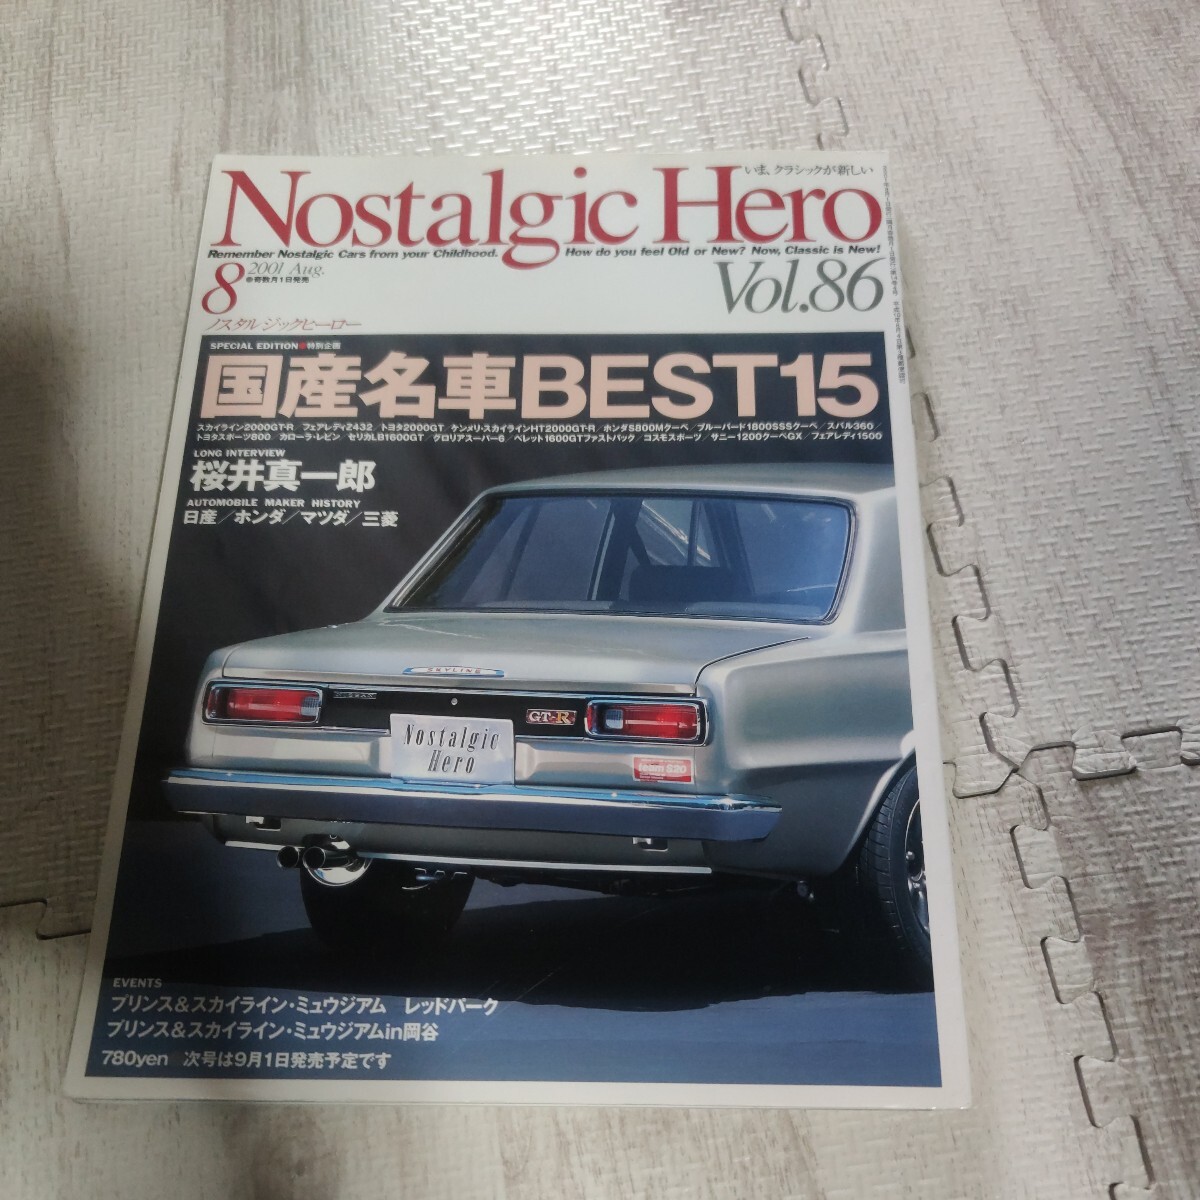 ノスタルジックヒーロー Nostalgic Hero Vol86 自動車雑誌 雑誌 車_画像1